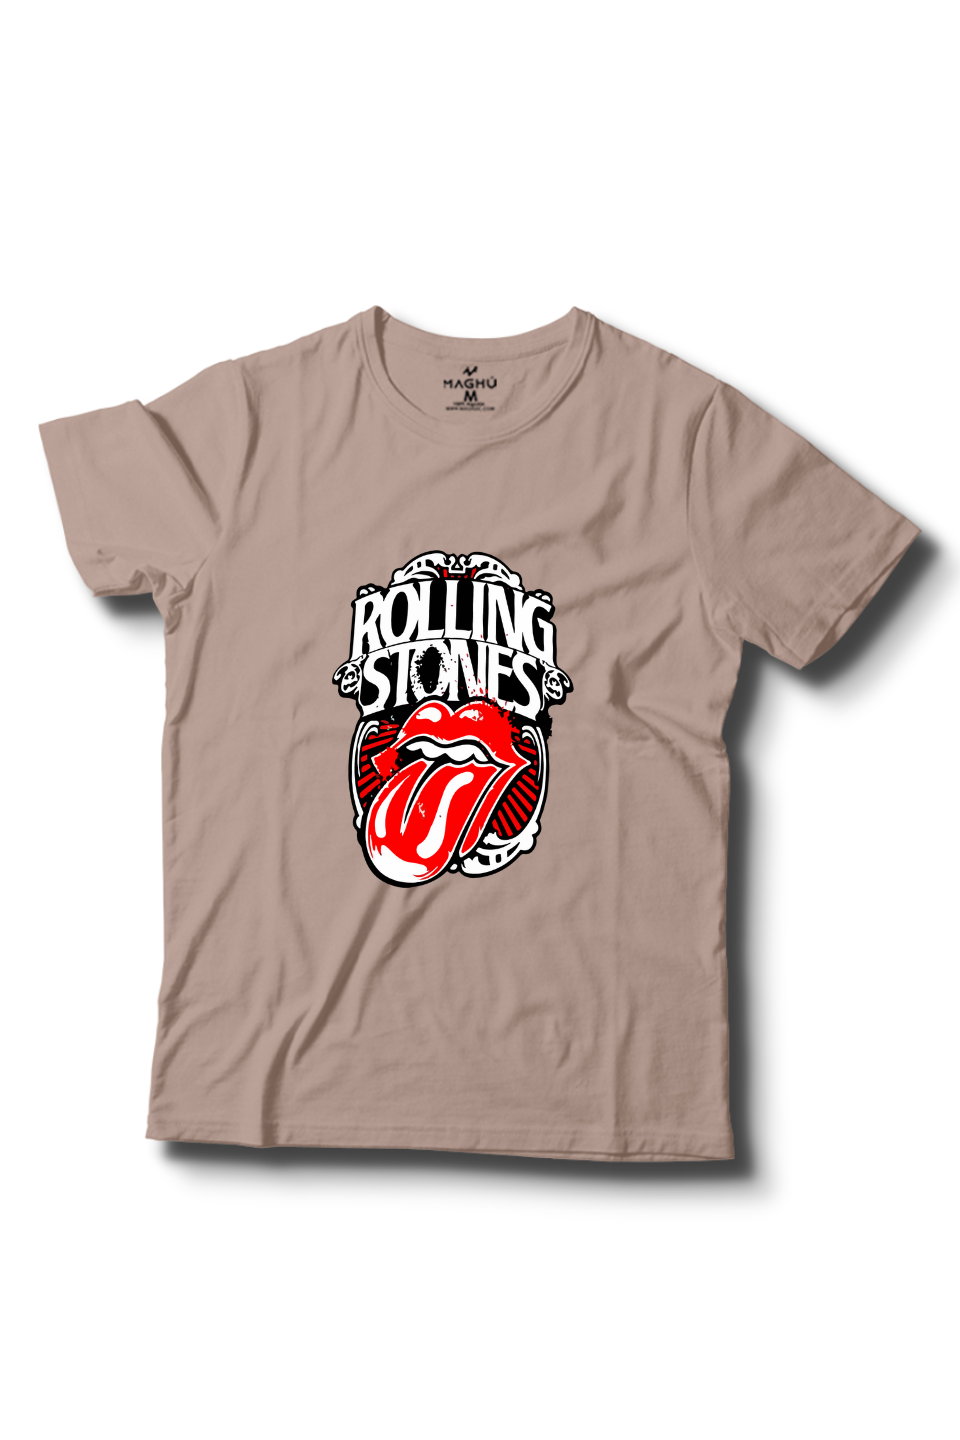 Básica Rolling stones